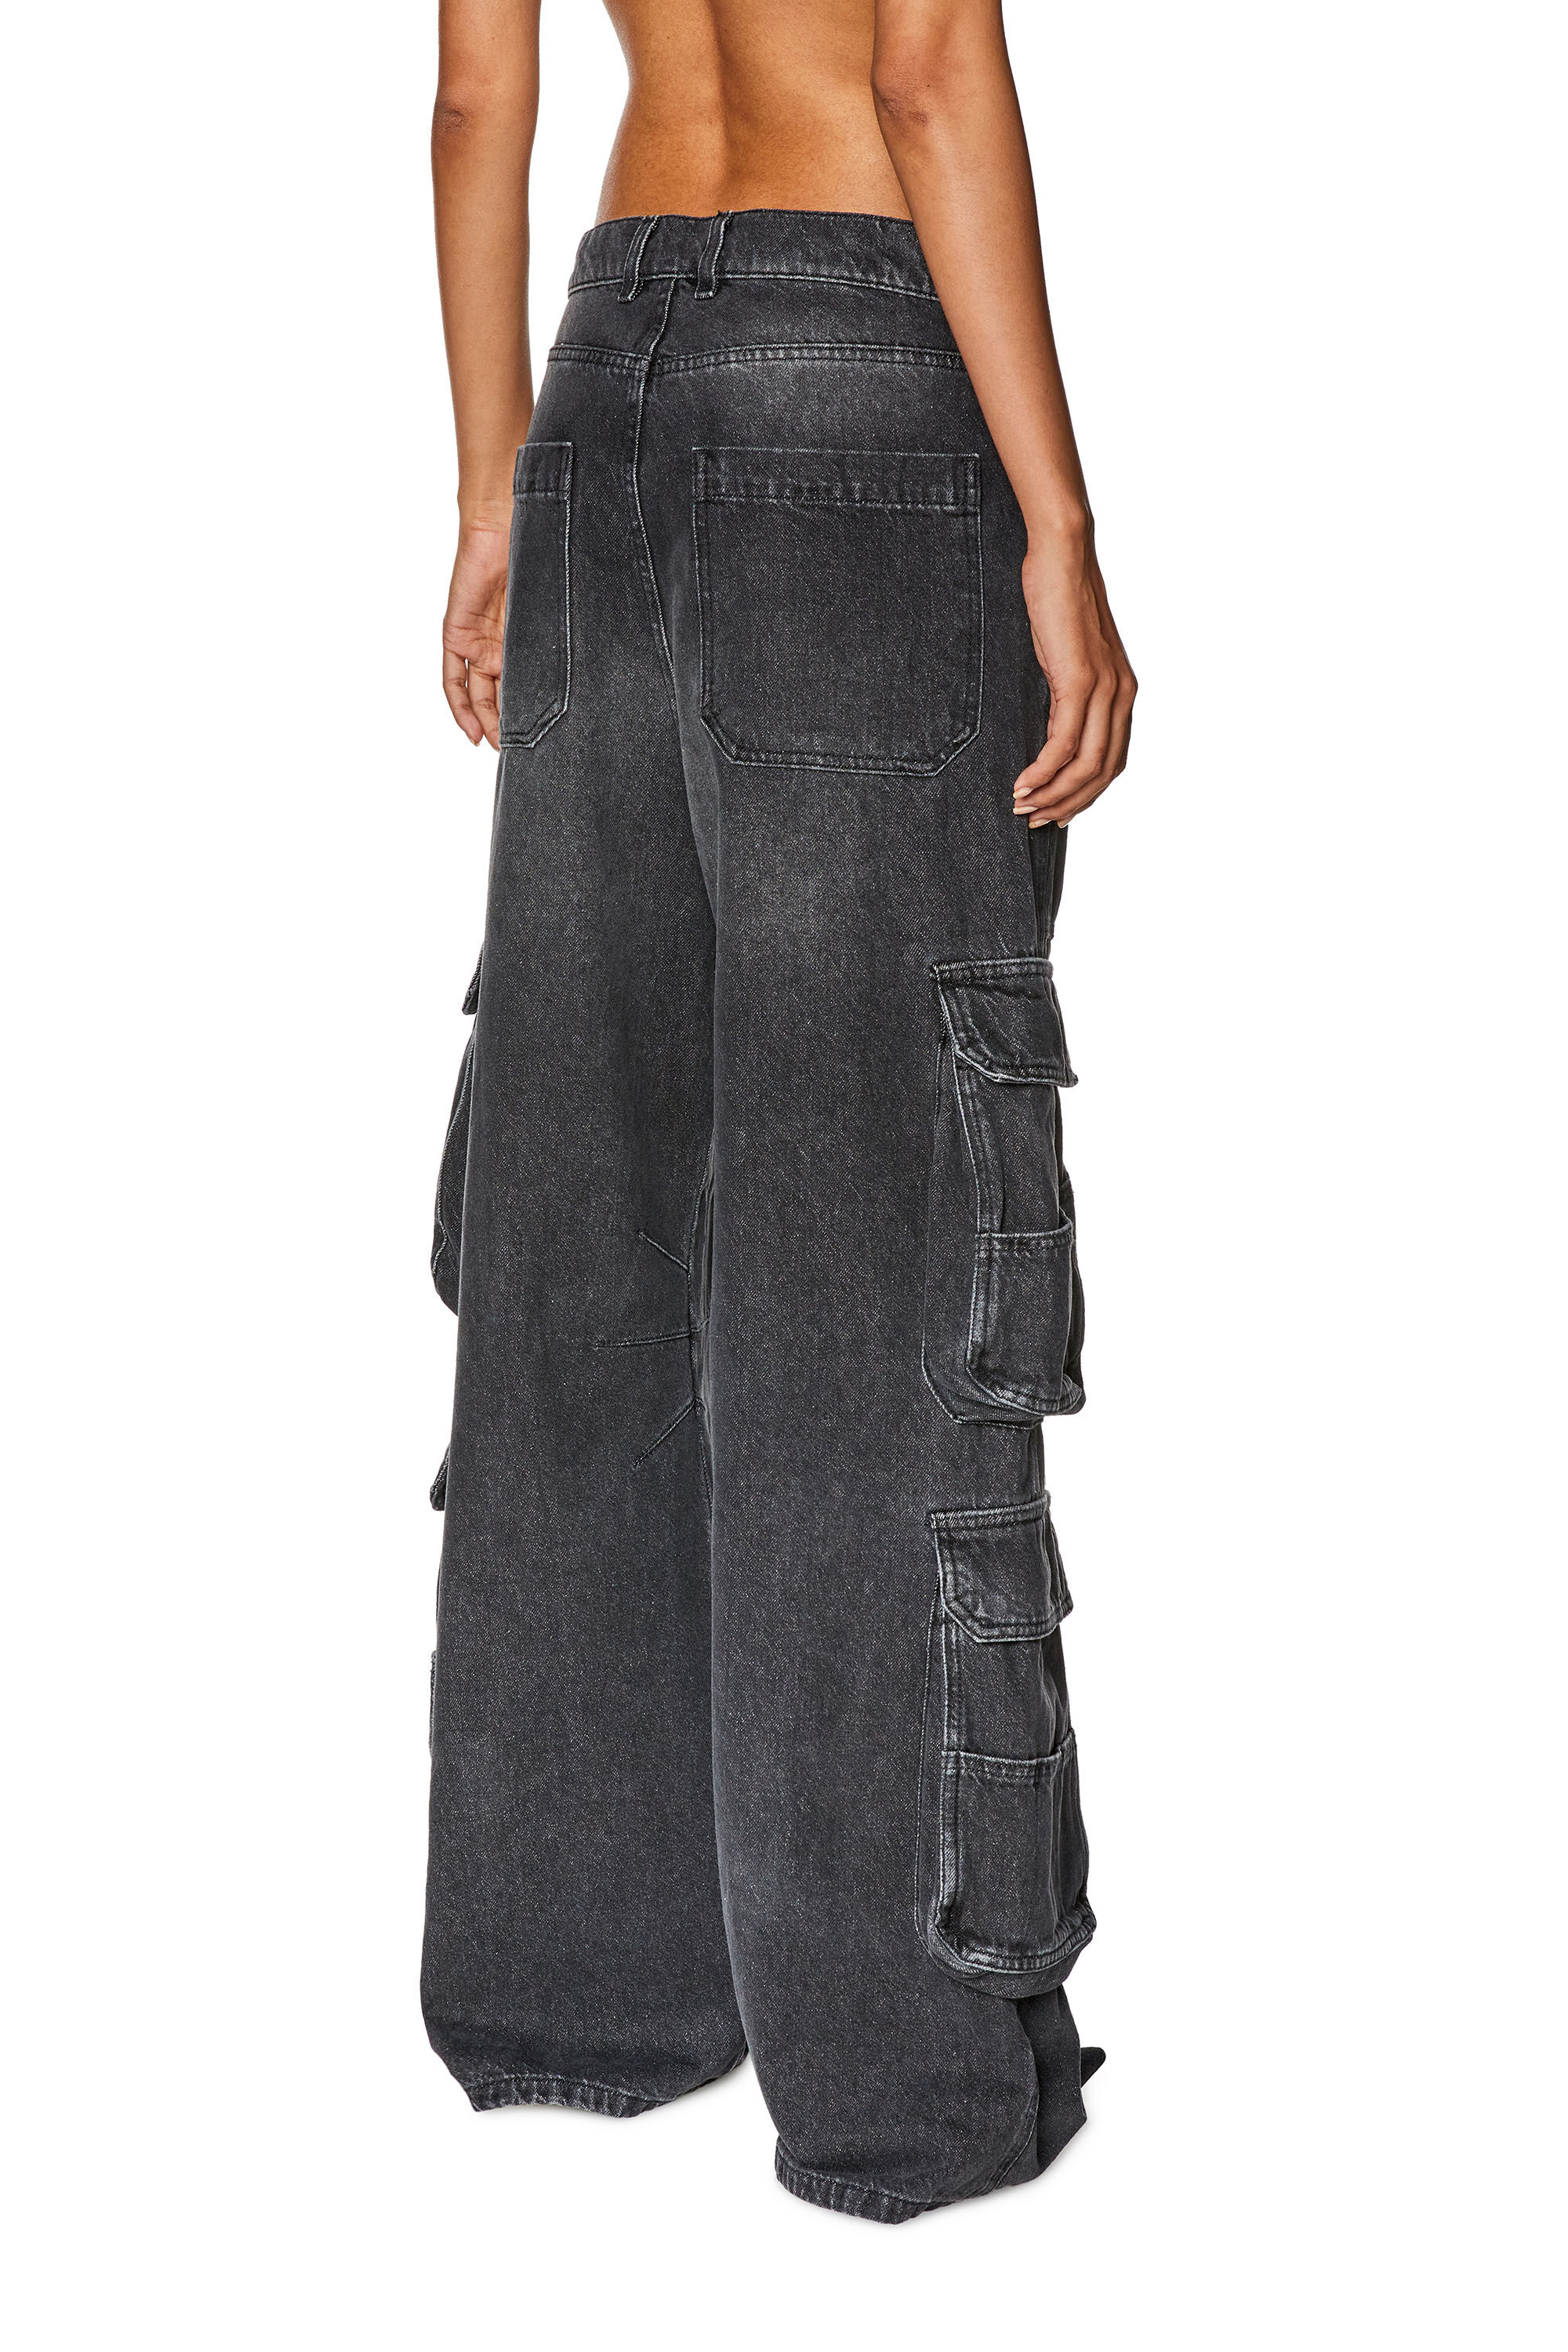 Diesel - Woman Straight Jeans 1996 D-Sire 0HLAA, Black/Dark grey - Image 4